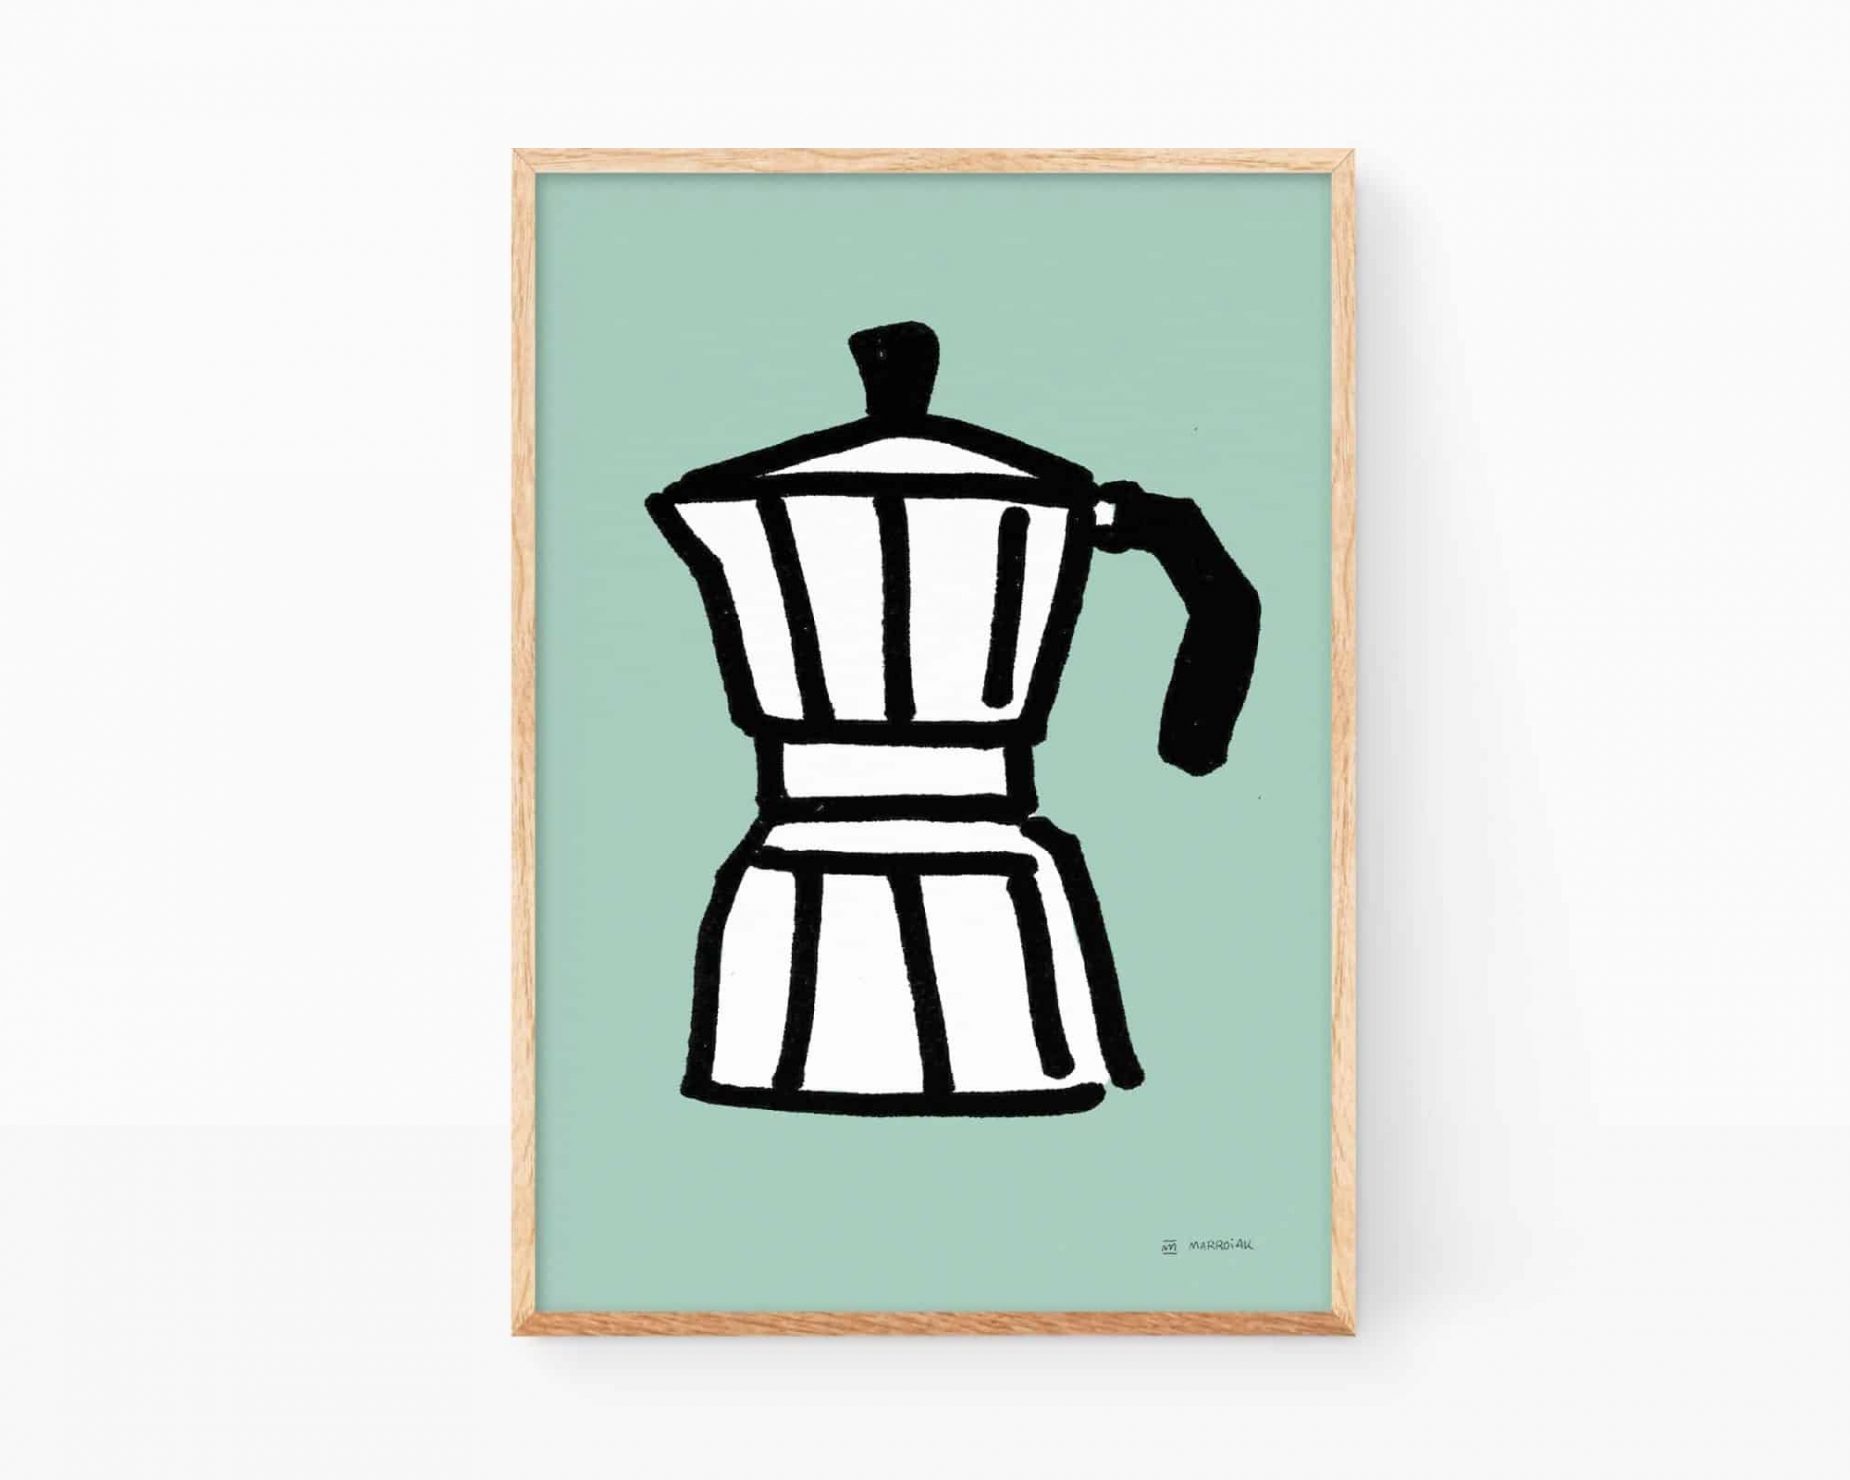 Lámina decorativa cocina, Desayuno con café. Cuadros para enmarcar con un dibujo de una cafetera tradicional italiana sobre fondo turquesa. Ilustración de estilo minimalista y divertido.